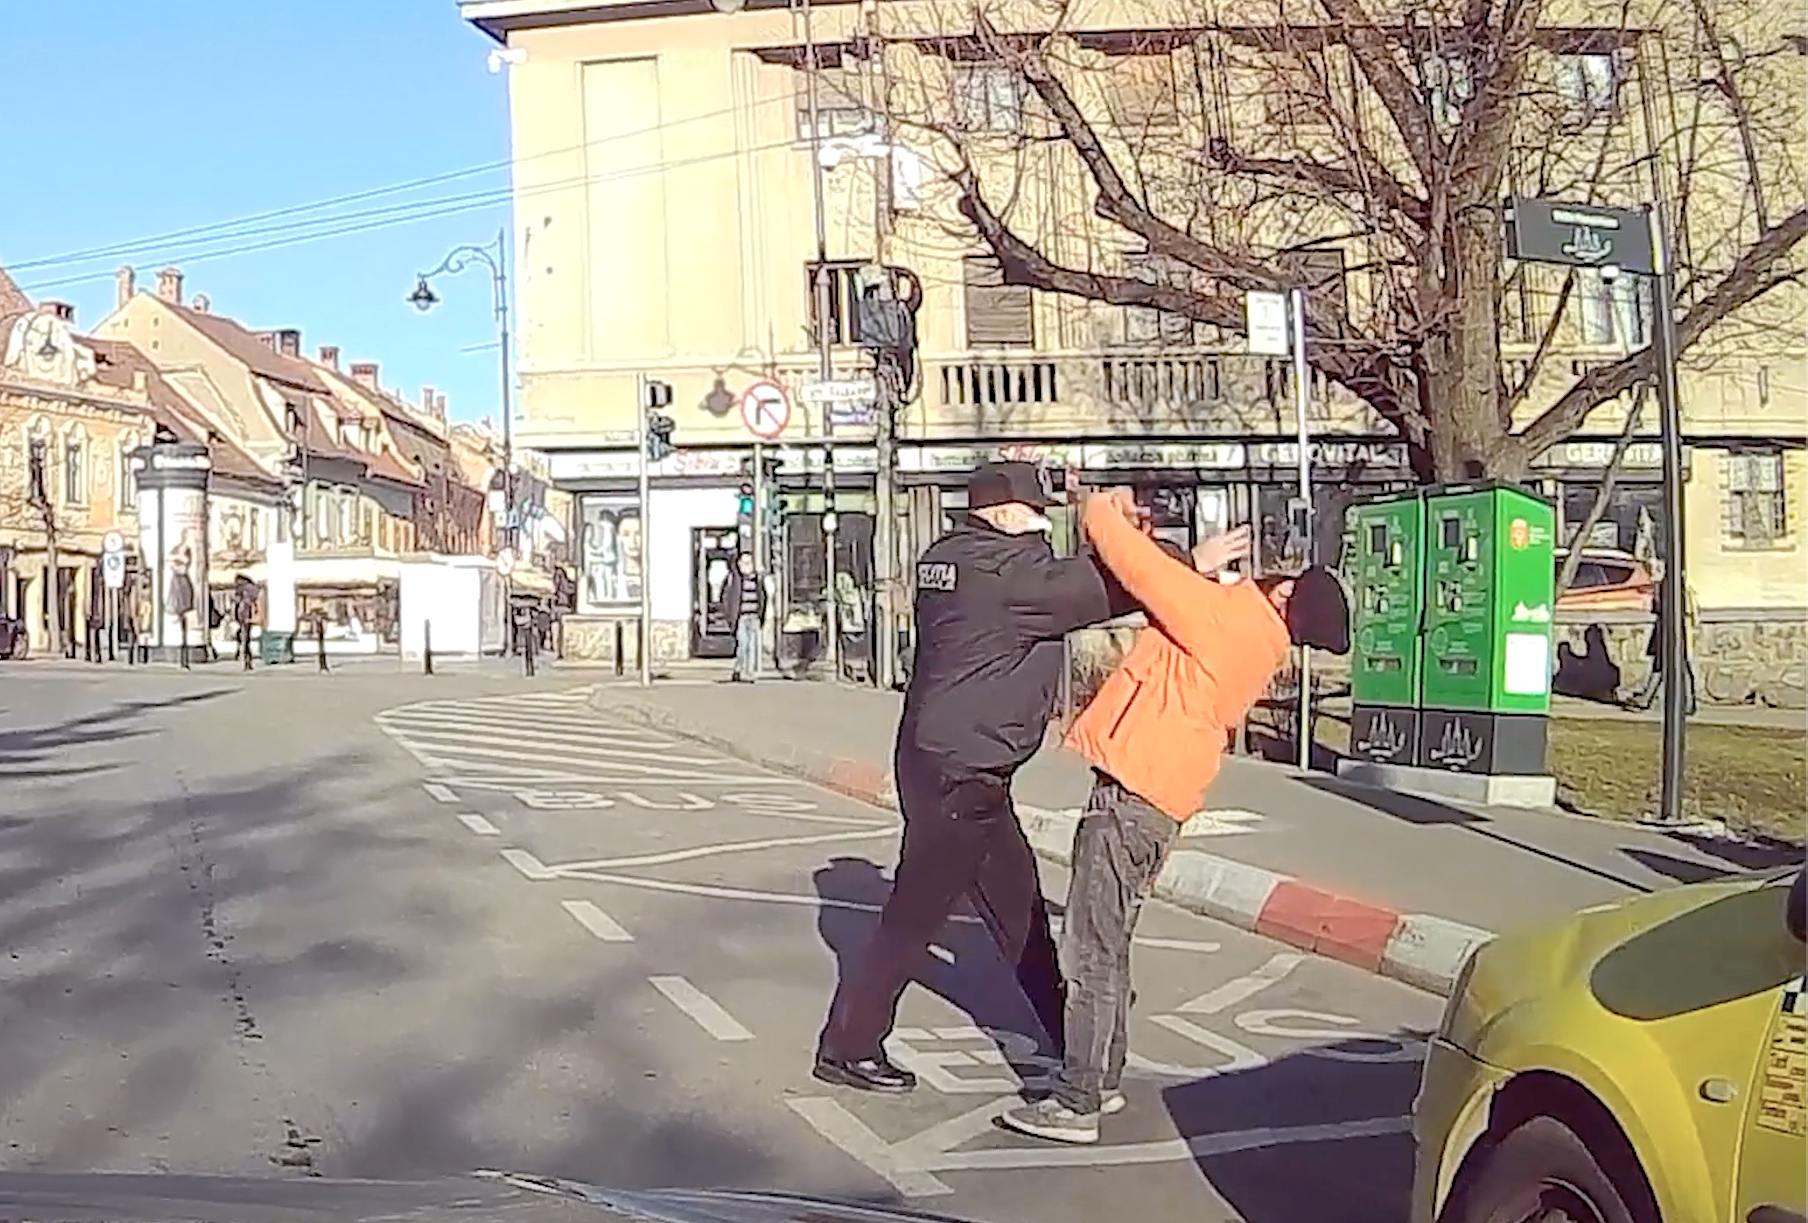 Primăria: cerșetorul bătut de un polițist local e cunoscut violent. ”Nedorit și regretabil incident” VIDEO